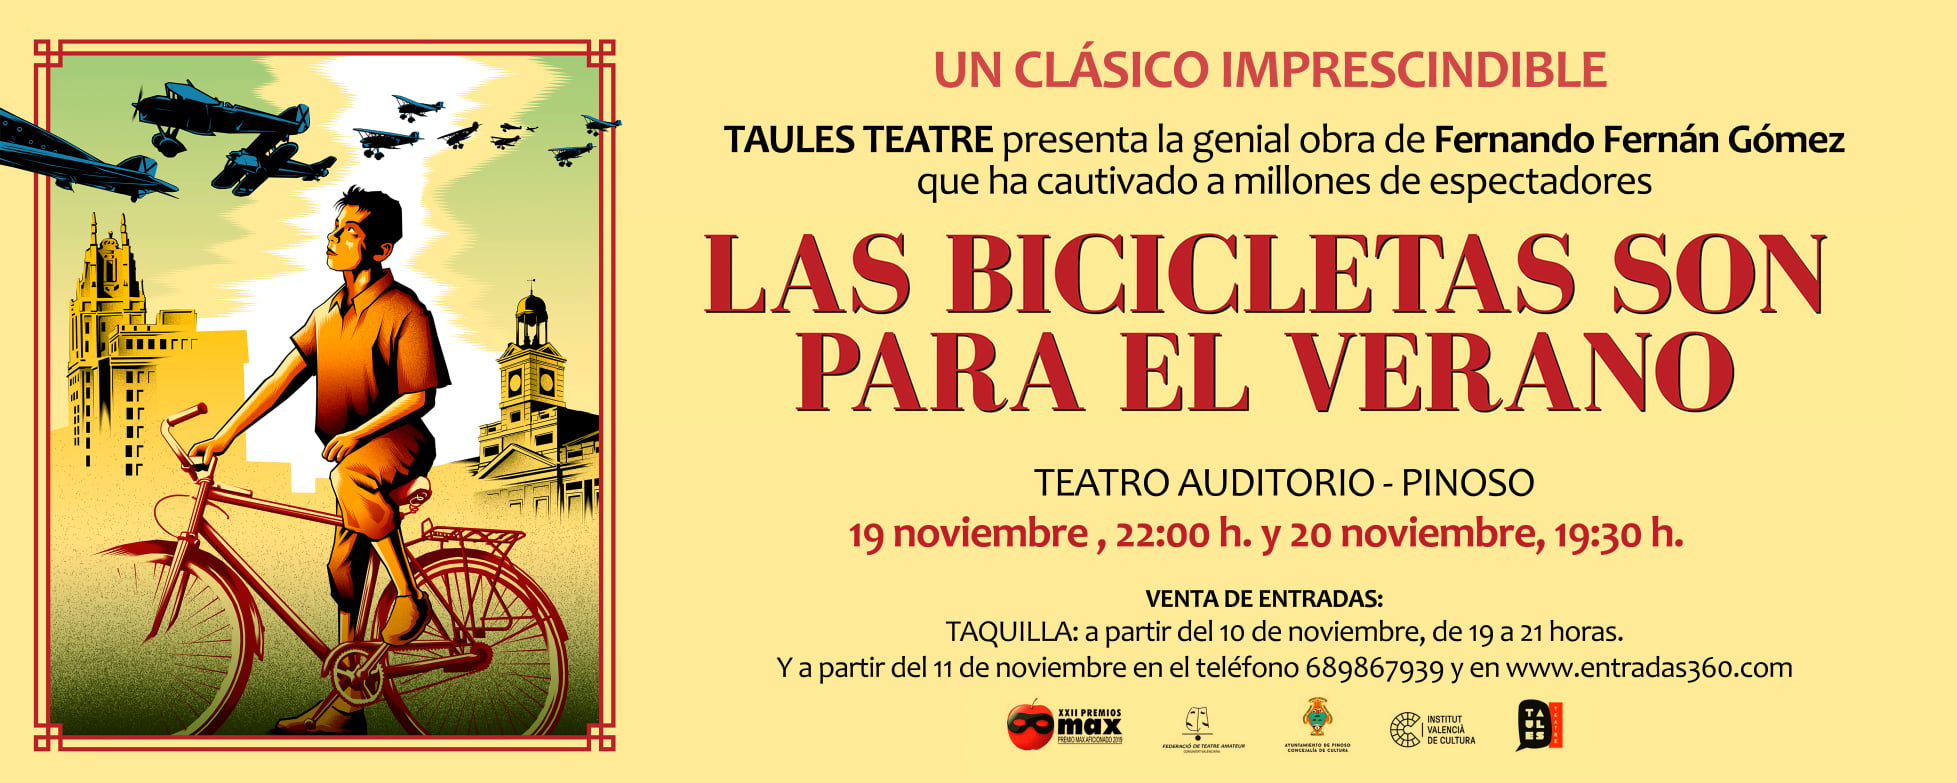 Taules Teatre presenta “LAS BICICLETAS SON PARA EL VERANO”